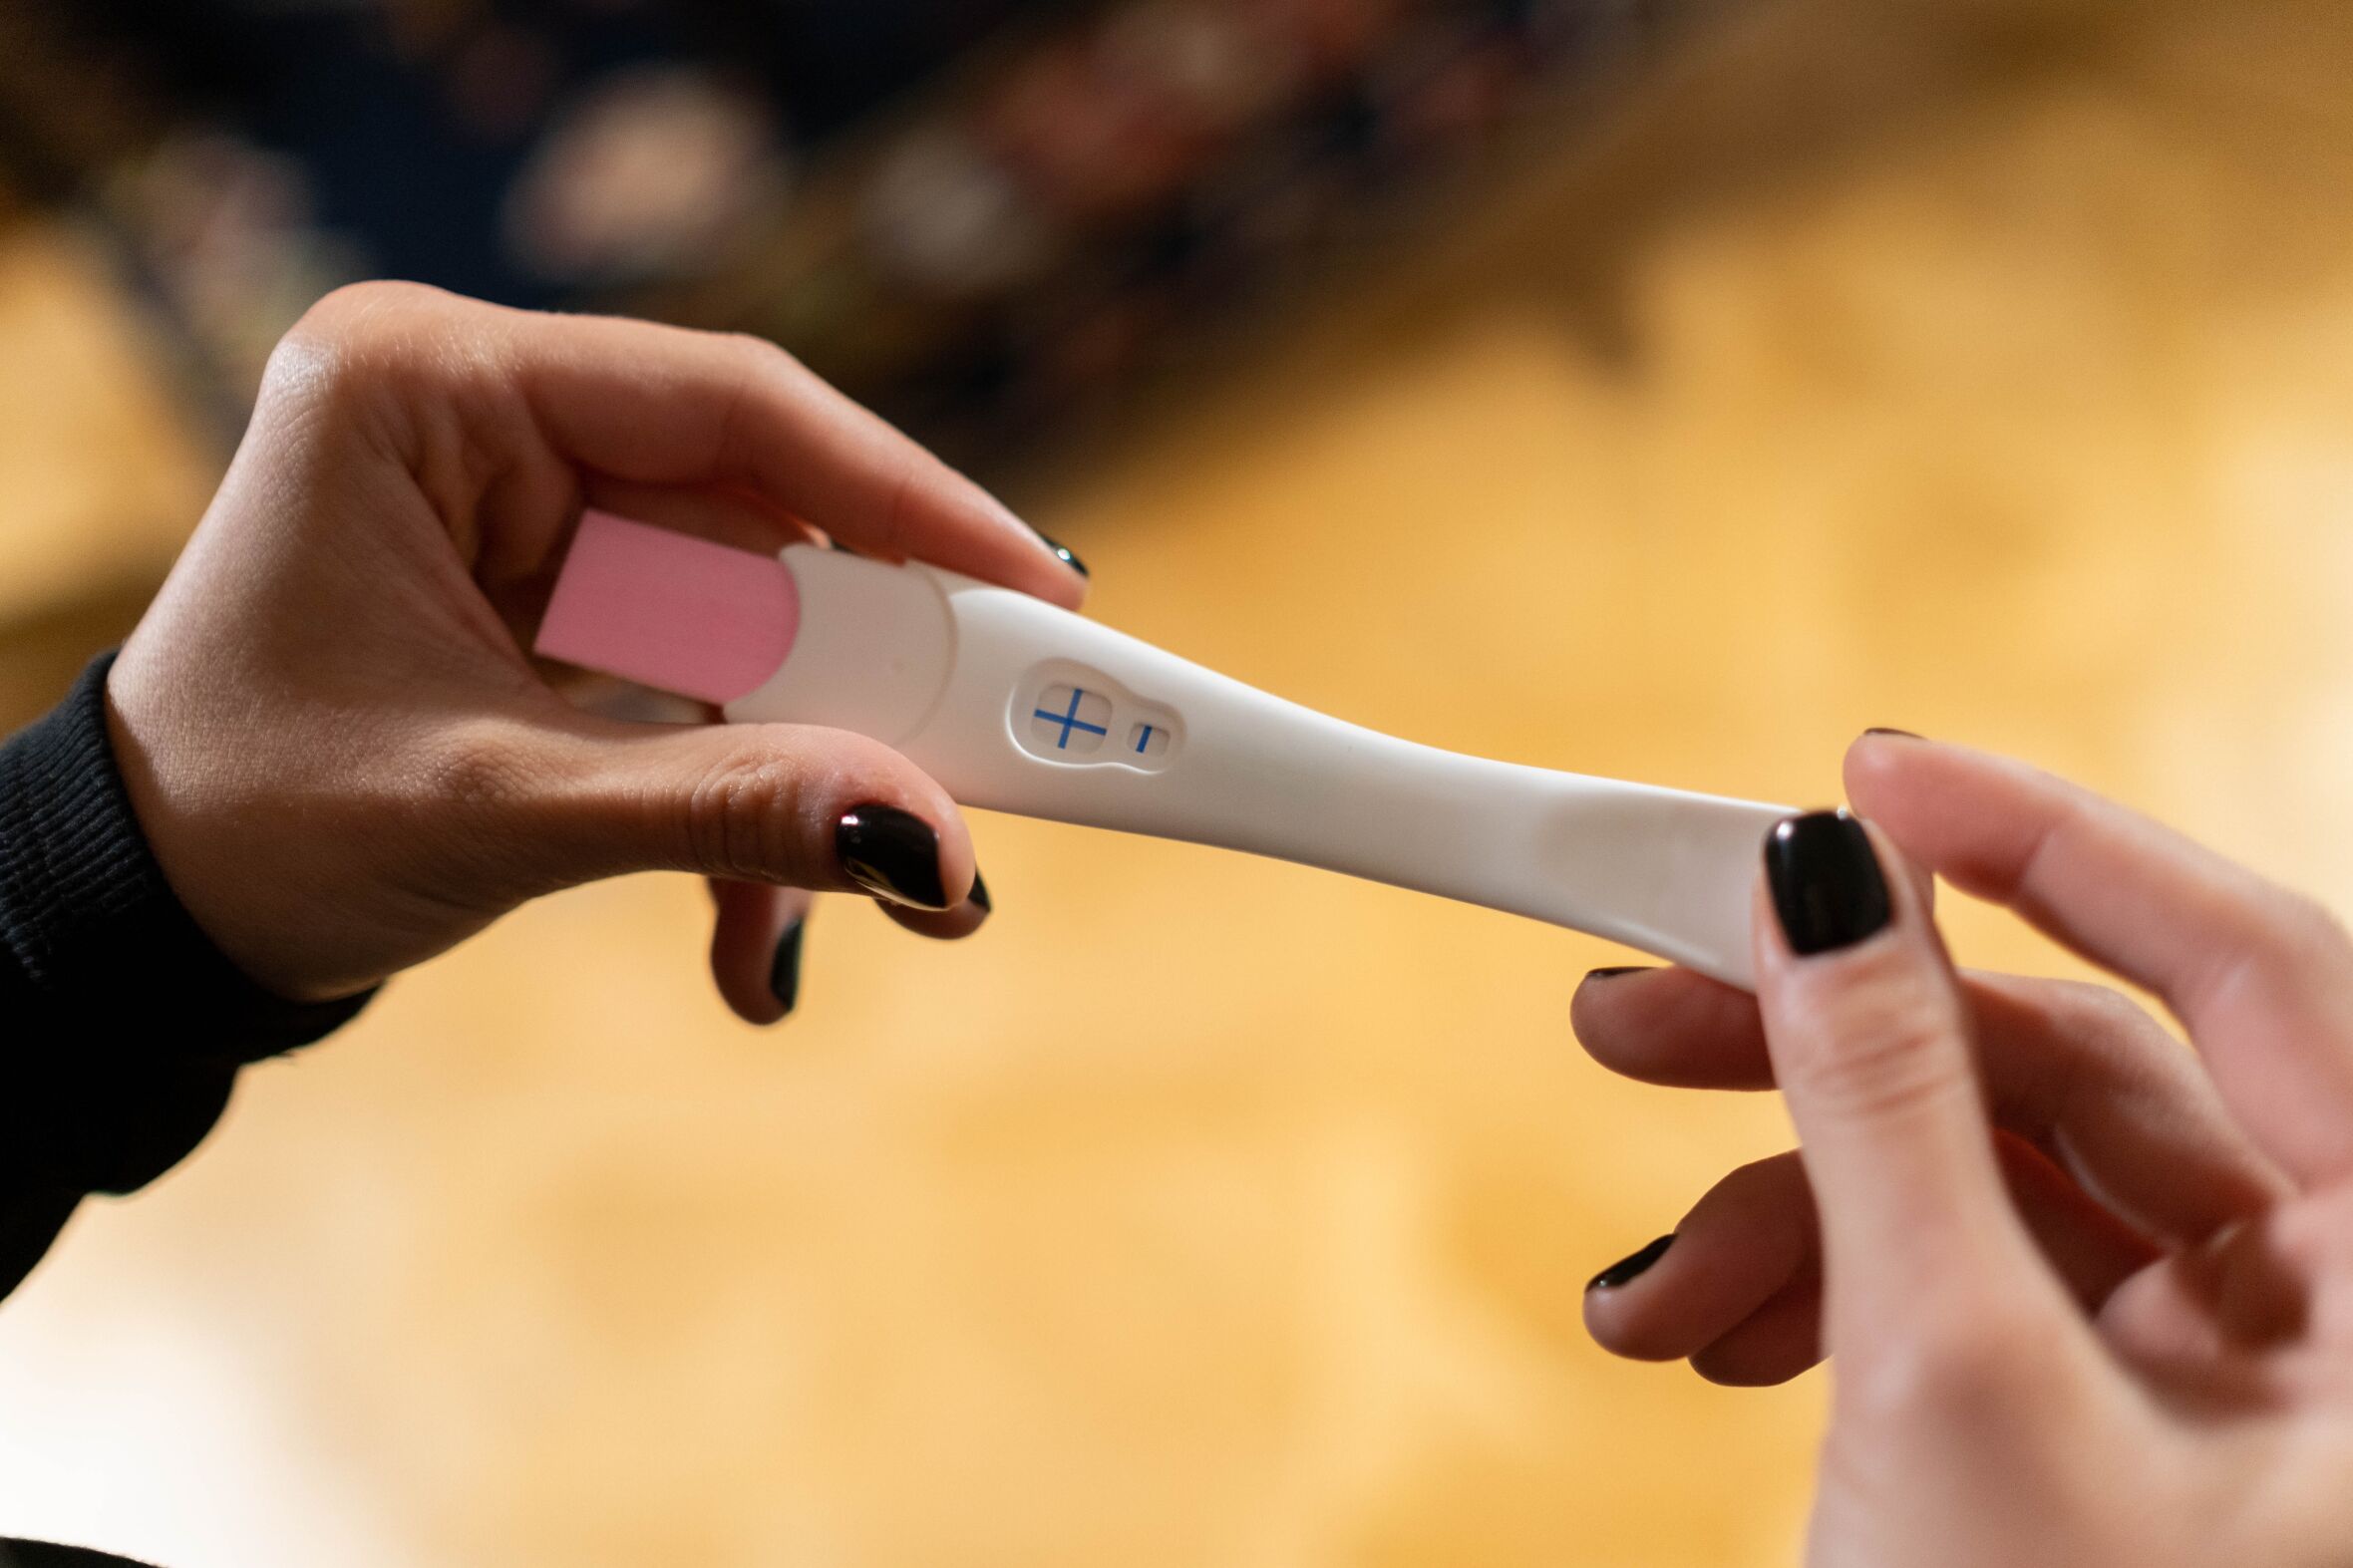 Serão os testes de gravidez das farmácias confiáveis?